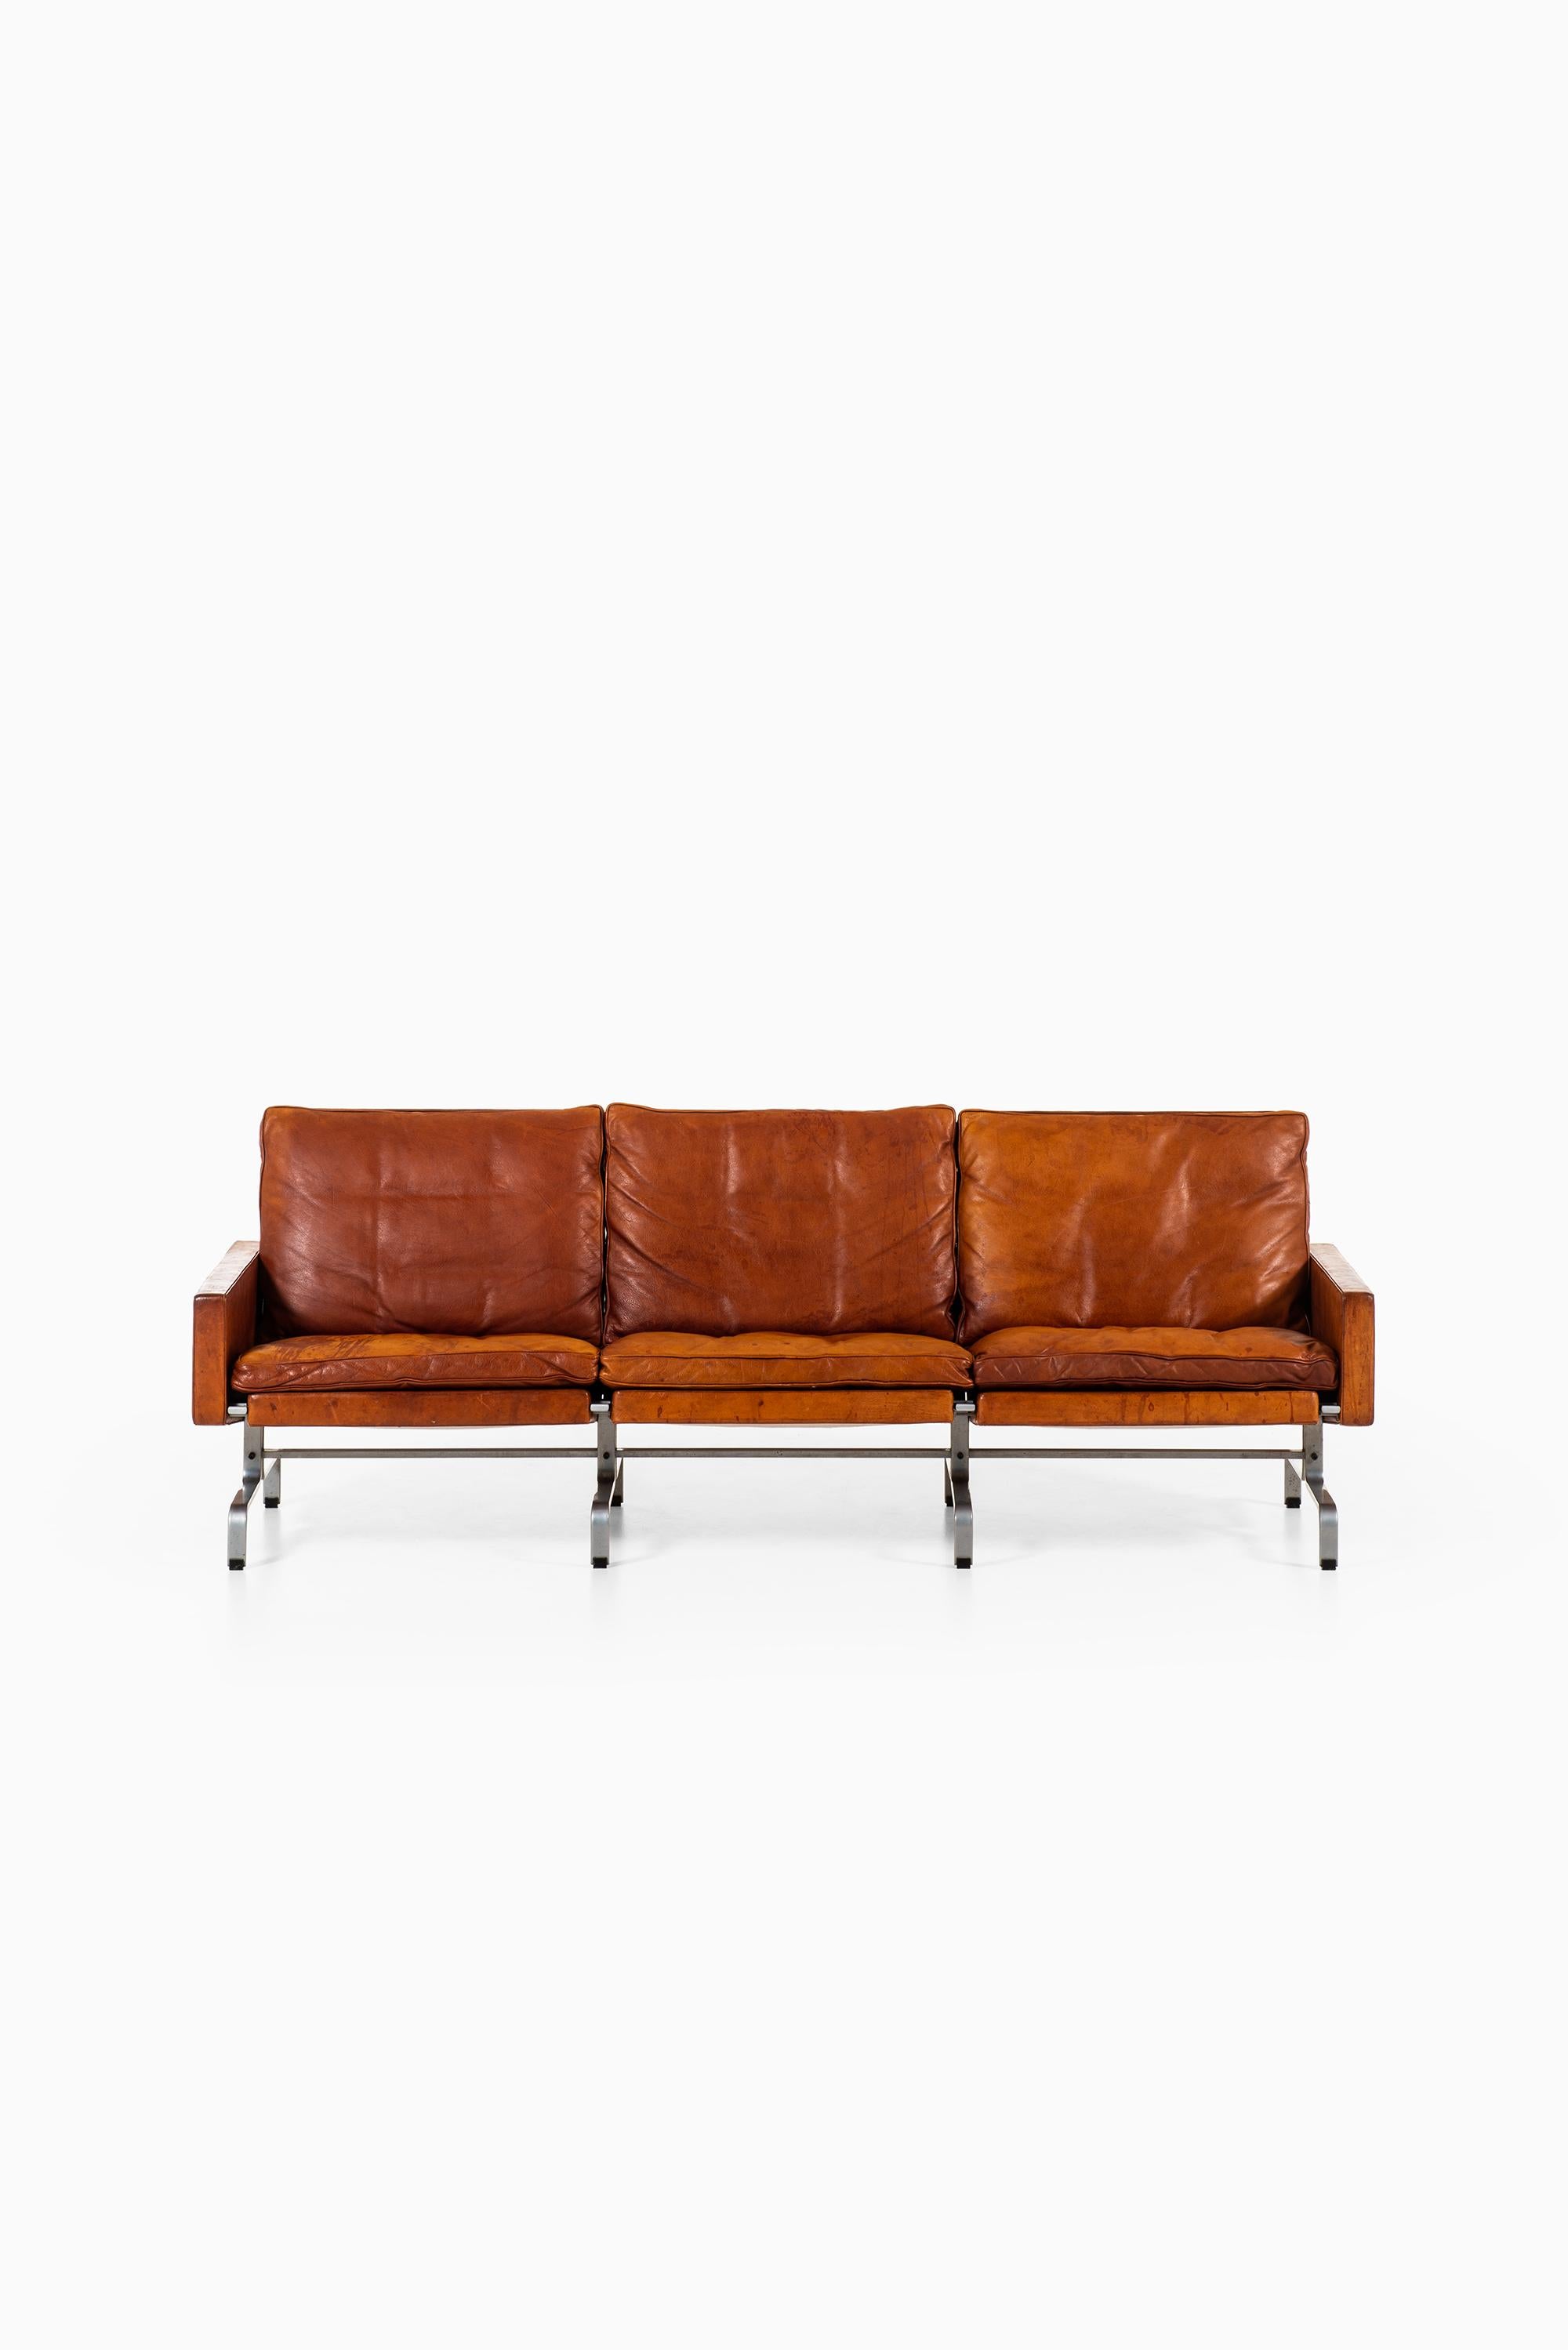 Rare sofa model PK-31/3 designed by Poul Kjærholm. Produced by E. Kold Christensen in Denmark.